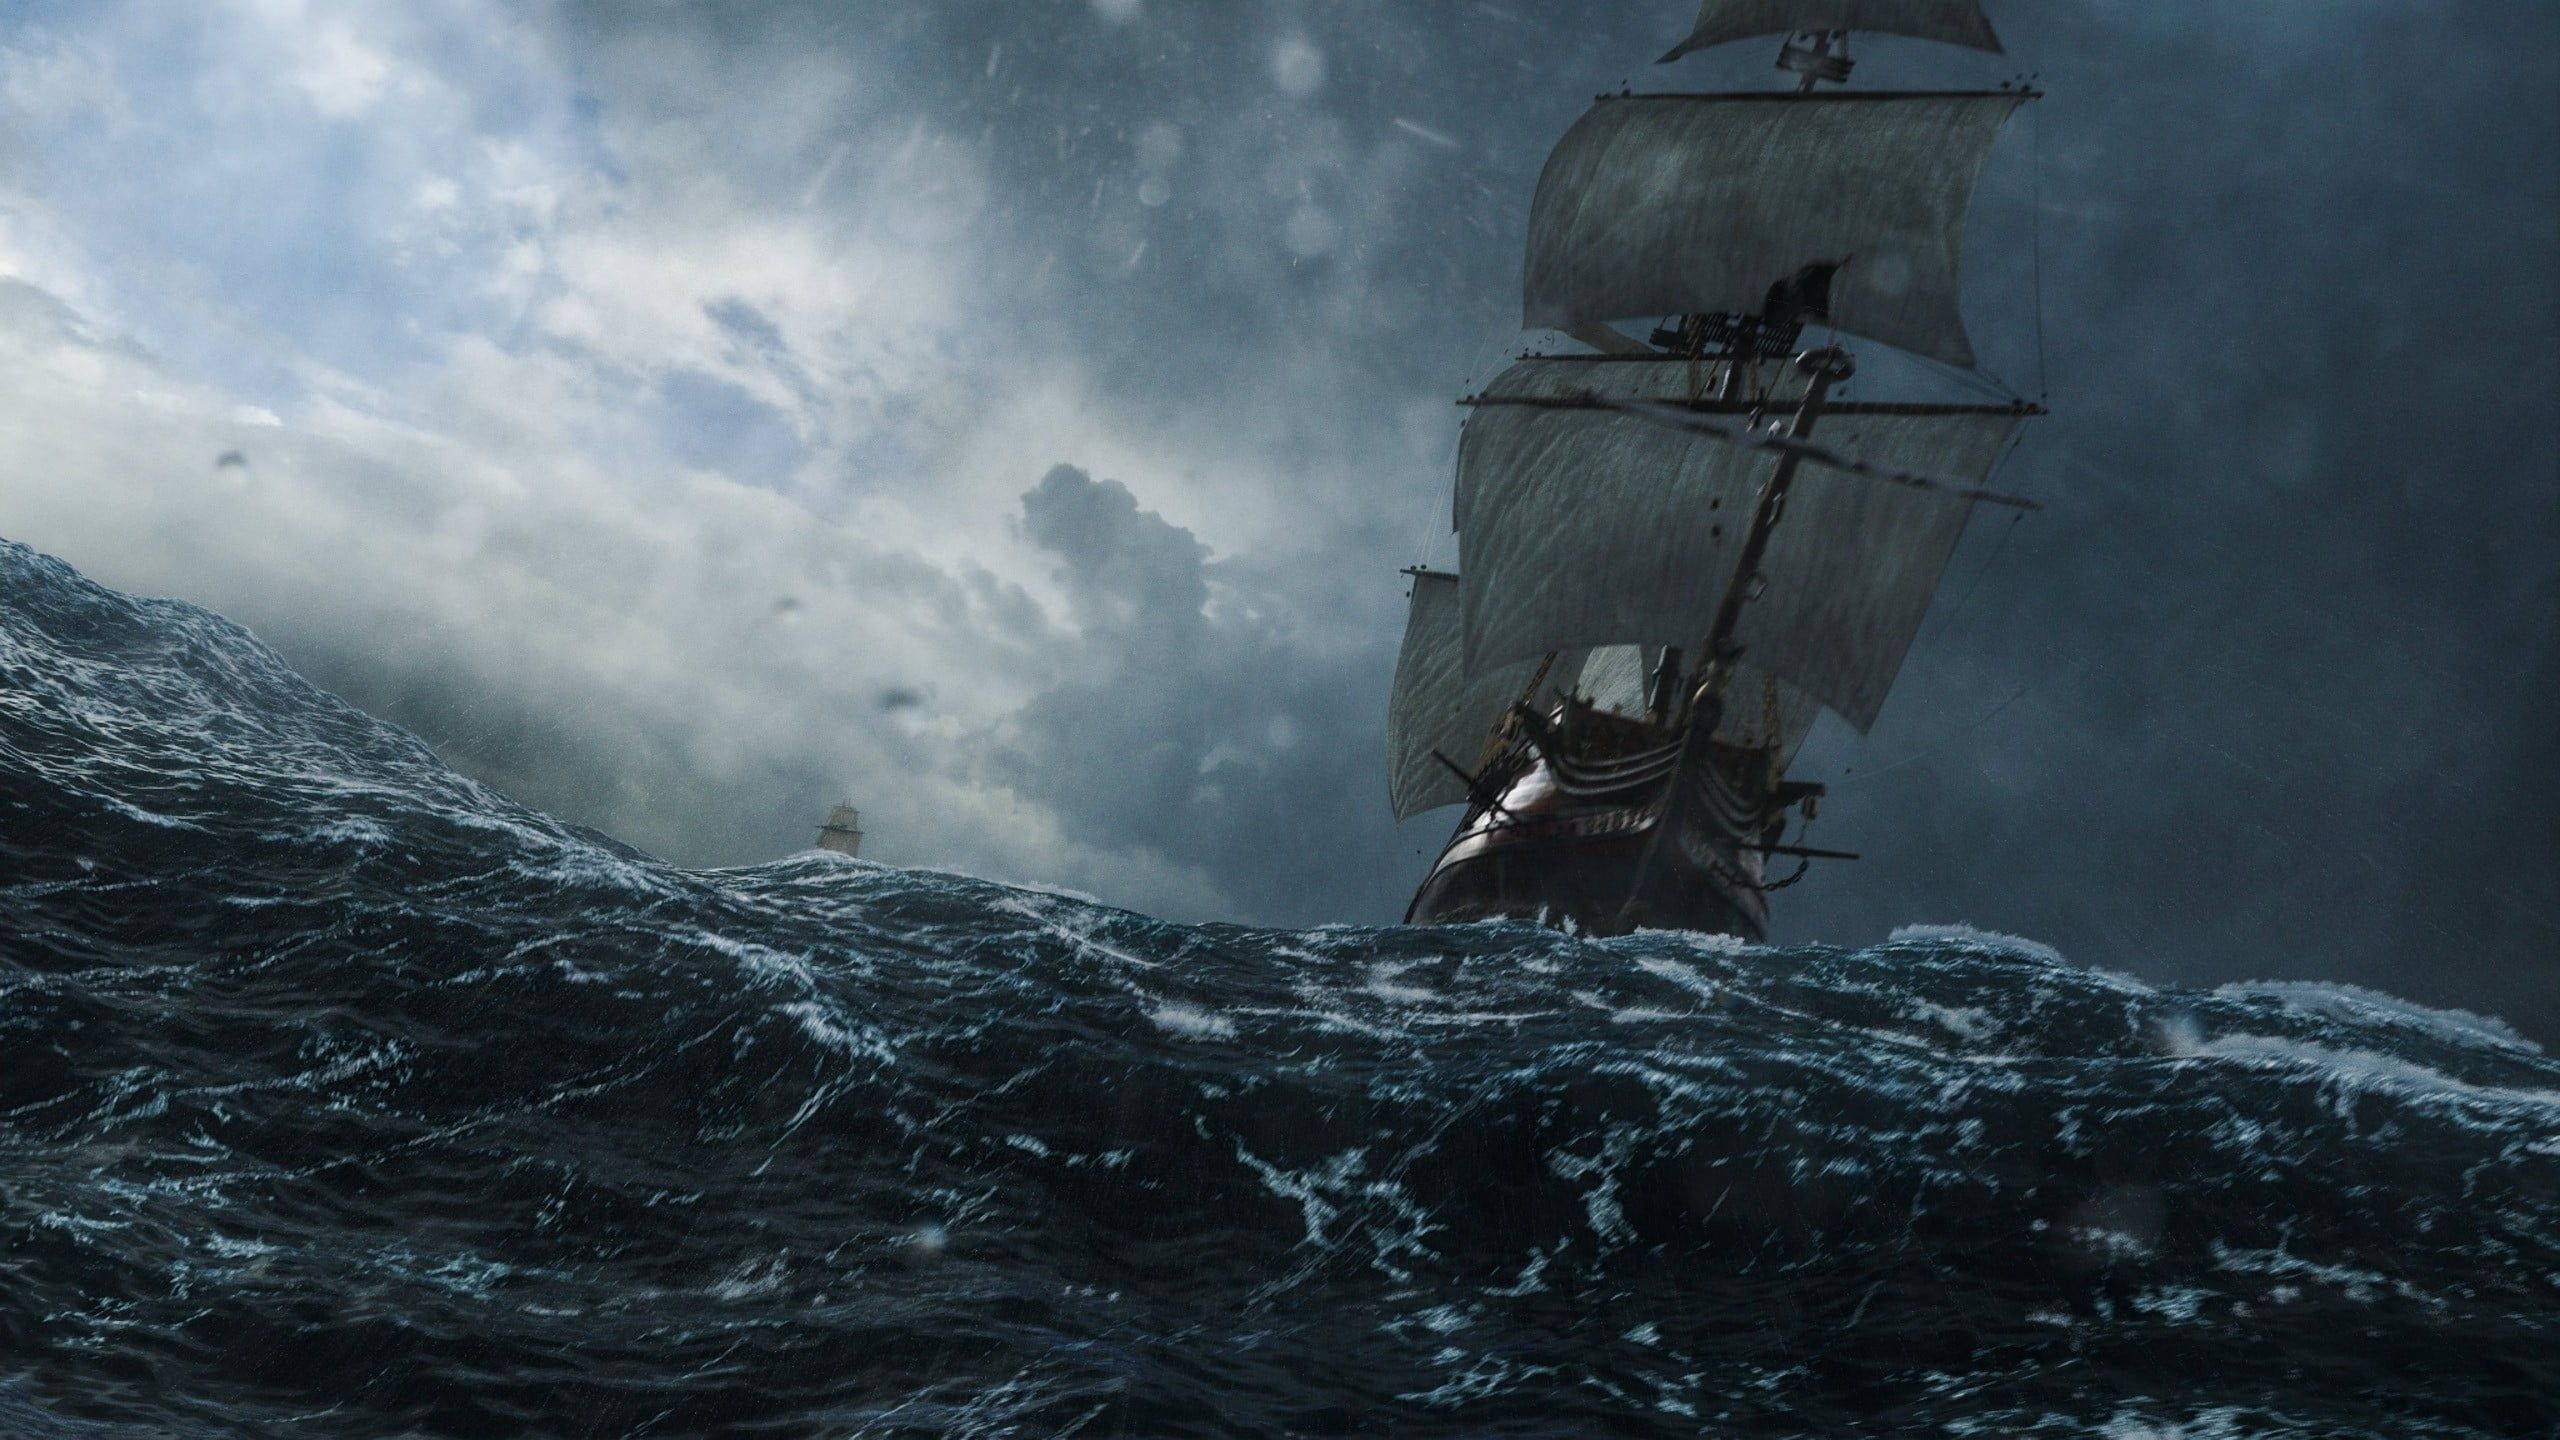 Black Sails TV Series, Galleon Boat, Sailing Ship, Storm, 2560x1440 HD Desktop